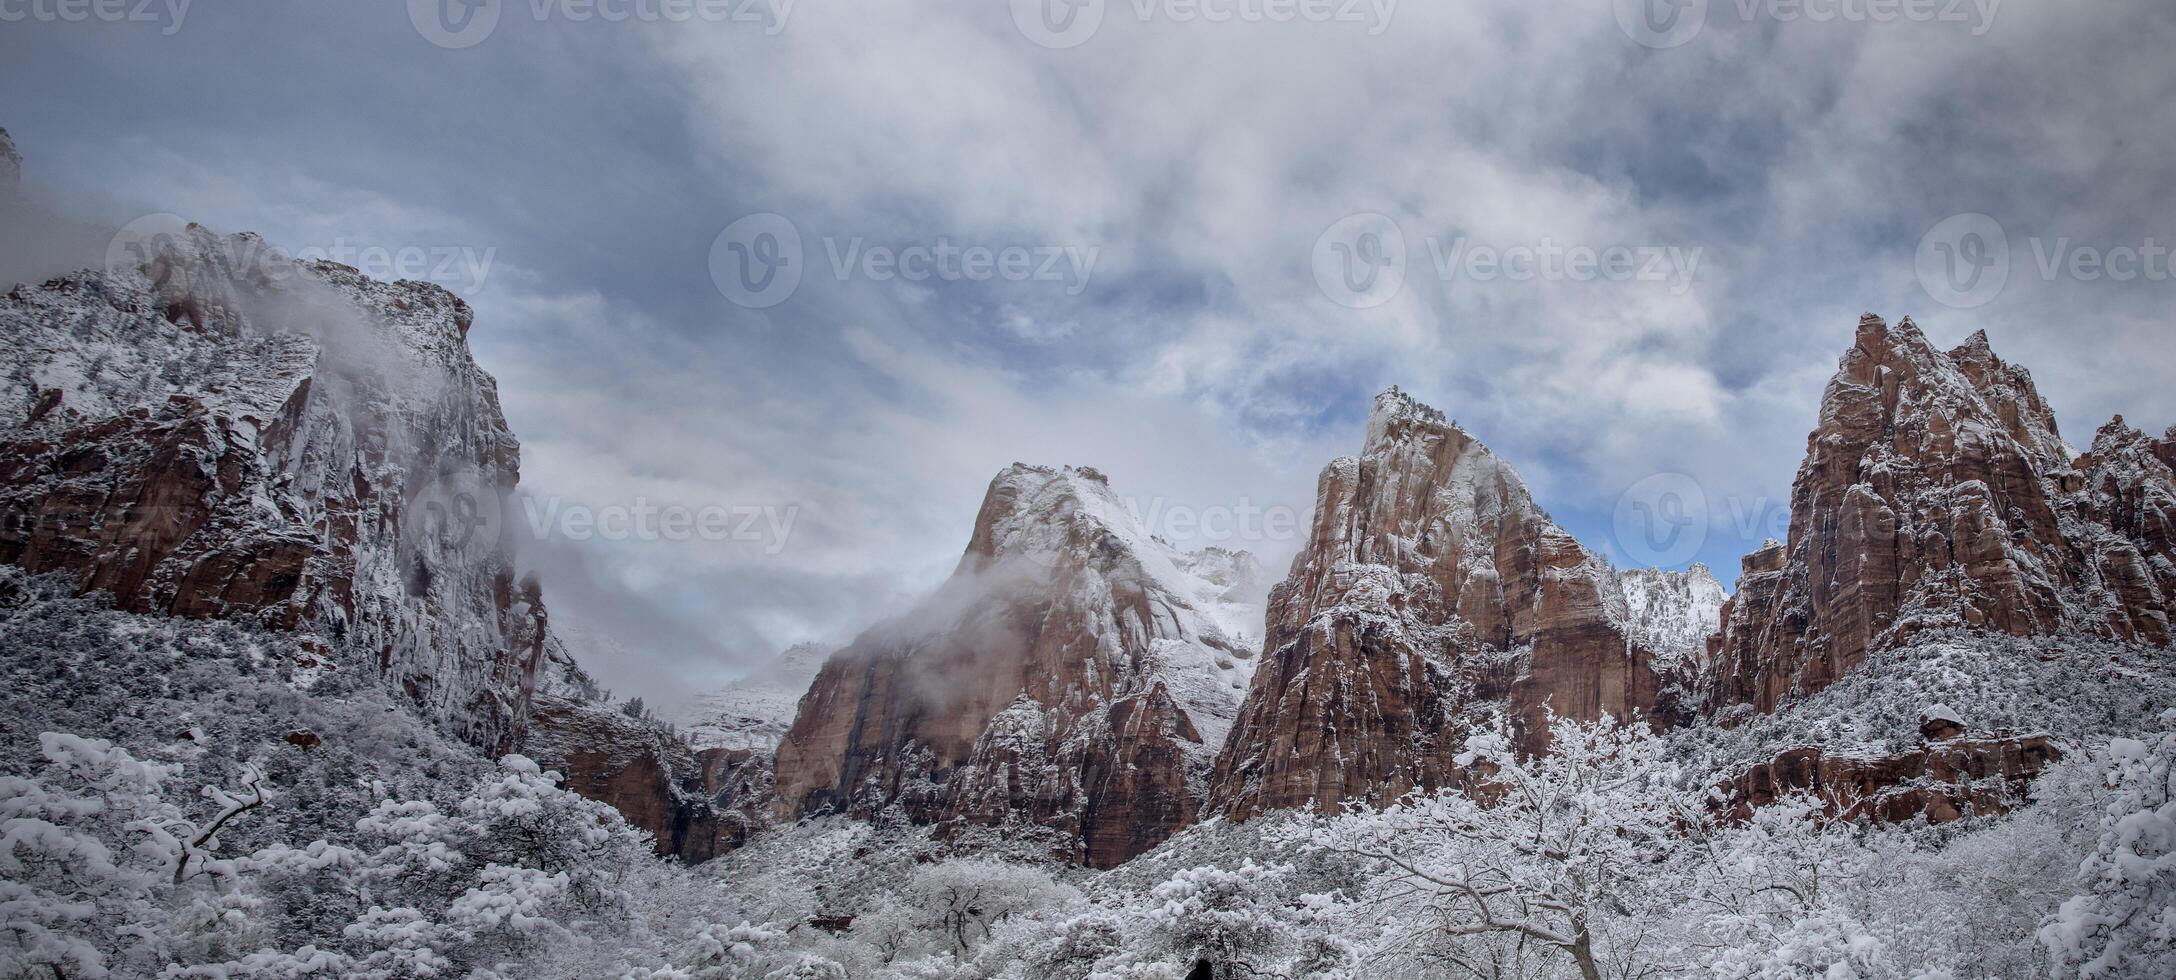 Zion Canyon Winter Panorama photo